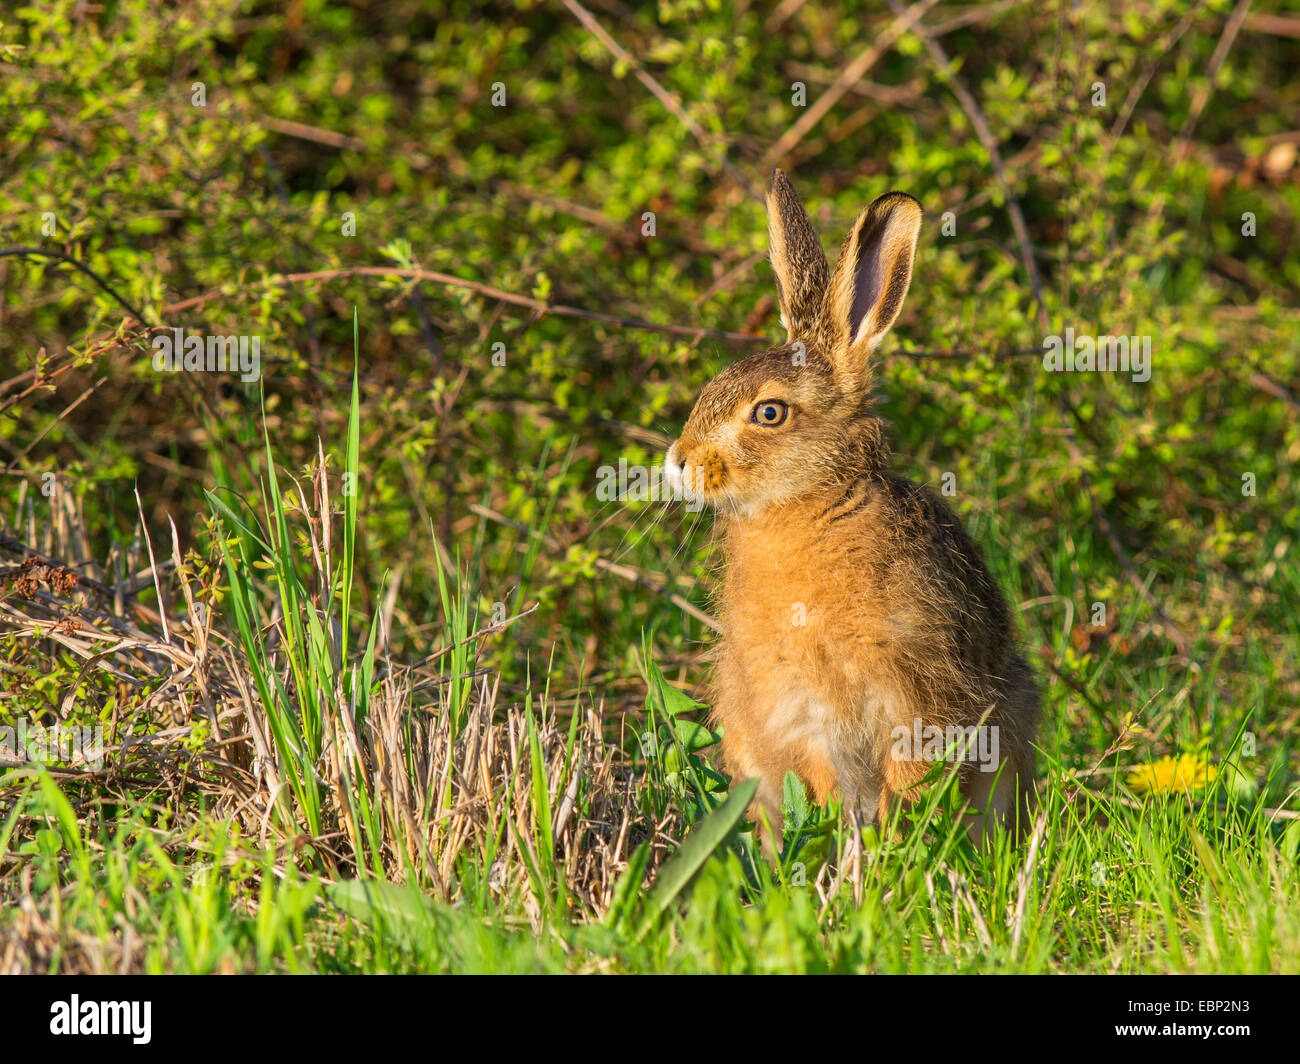 Liebre europea, marrón de la liebre (Lepus europaeus), tertulias joven Brown hare, Alemania Foto de stock